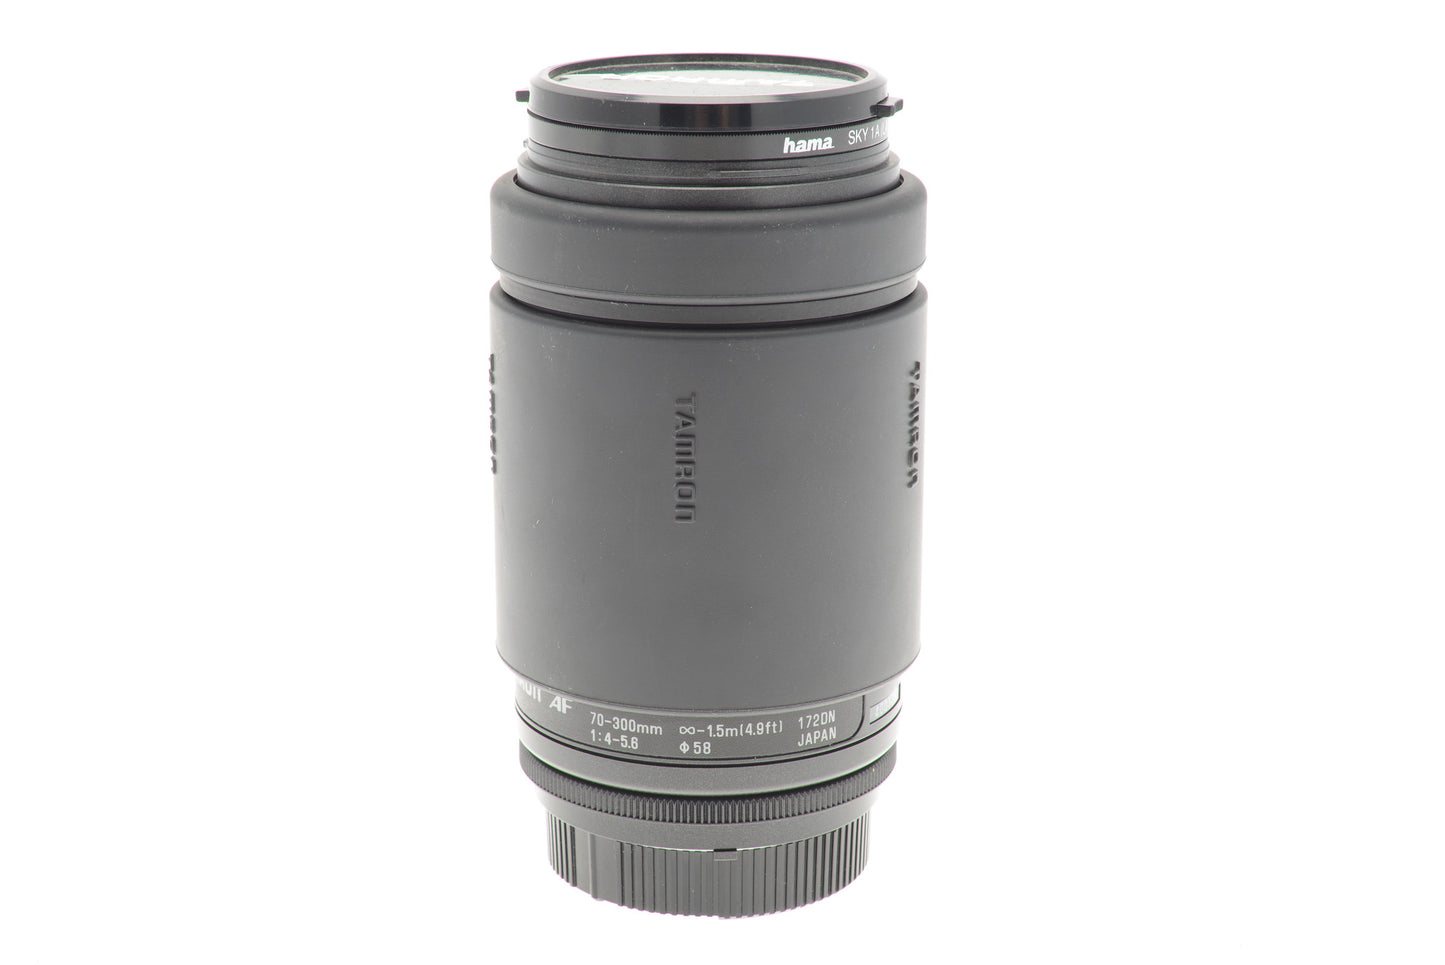 Tamron 70-300mm f4-5.6 AF (172DN) - Lens